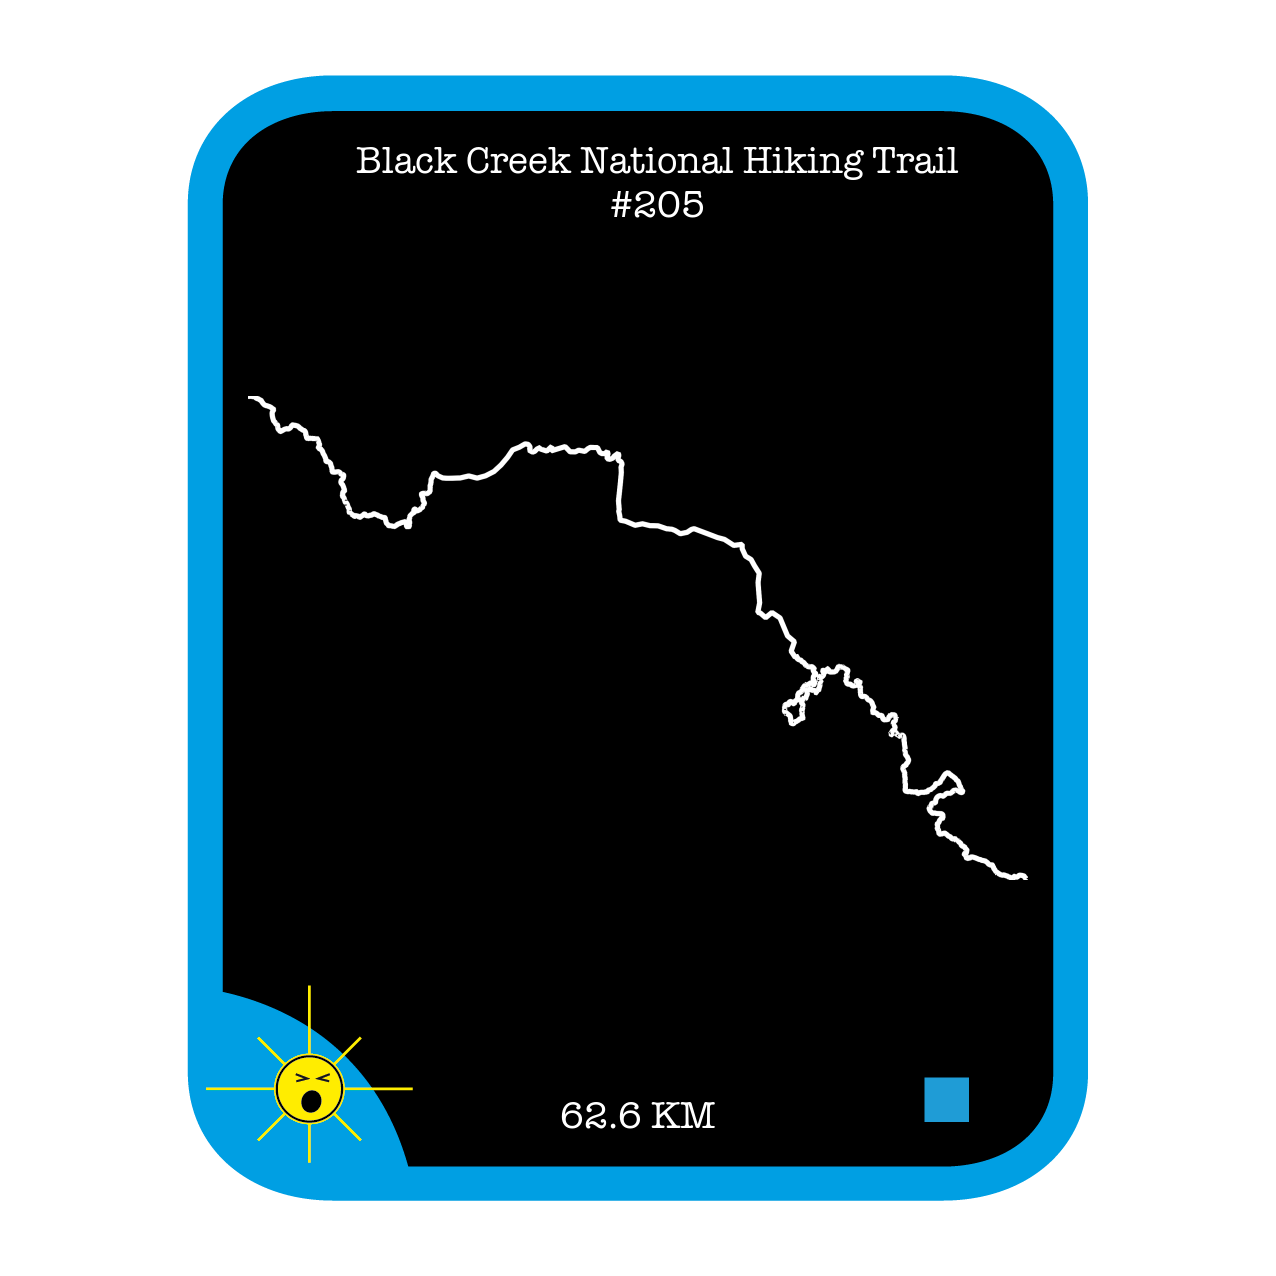 Black Creek National Hiking Trail #205